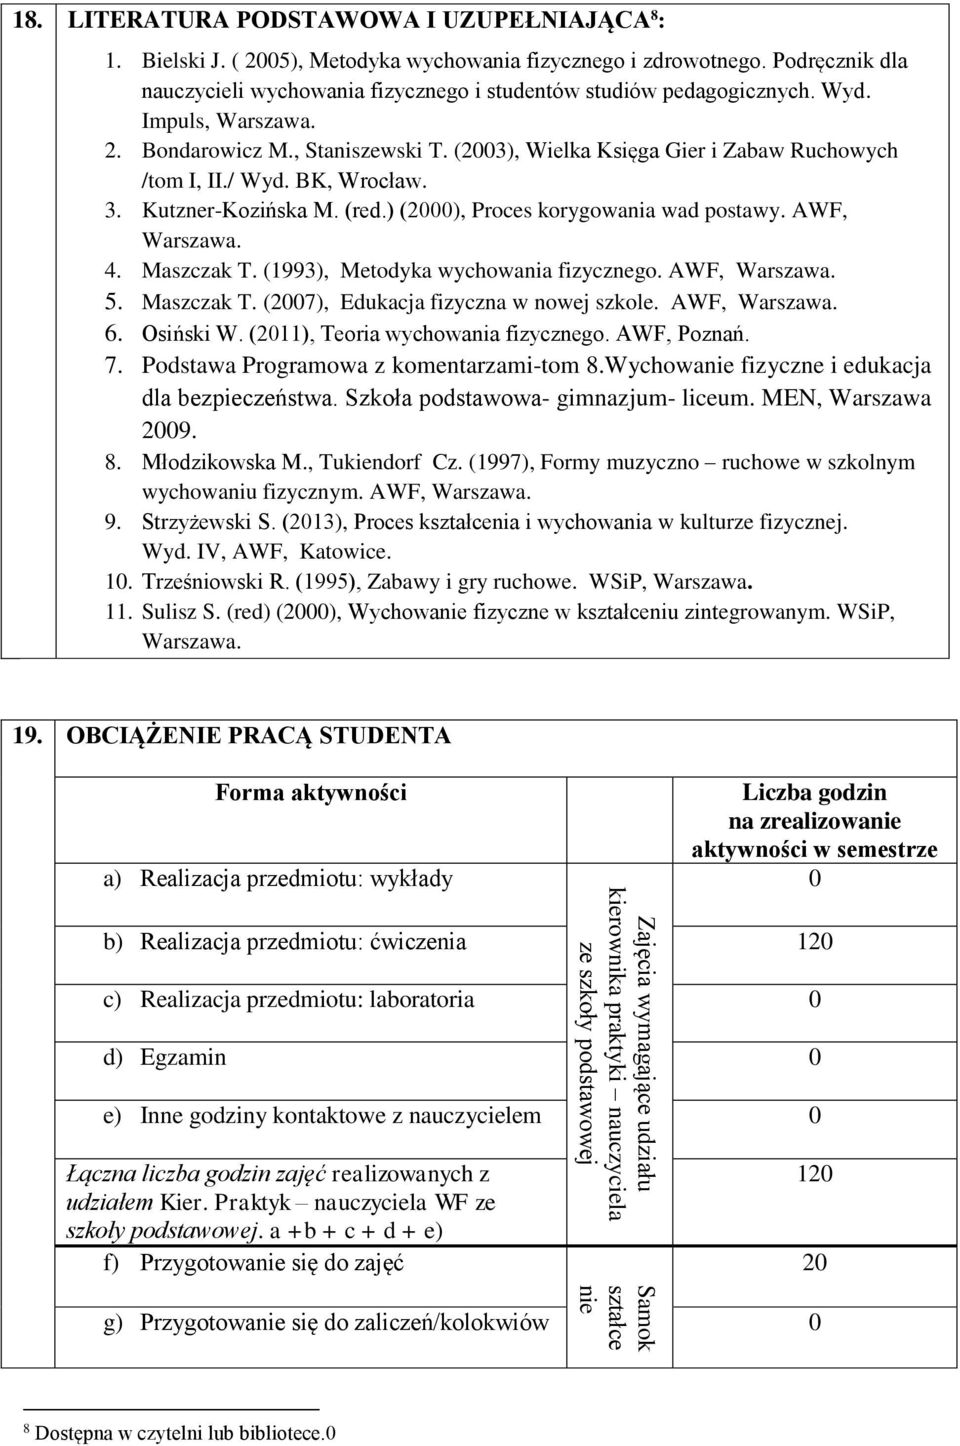 (2003), Wielka Księga Gier i Zabaw Ruchowych /tom I, II./ Wyd. BK, Wrocław. 3. Kutzner-Kozińska M. (red.) (2000), Proces korygowania wad postawy. AWF, Warszawa. 4. Maszczak T.